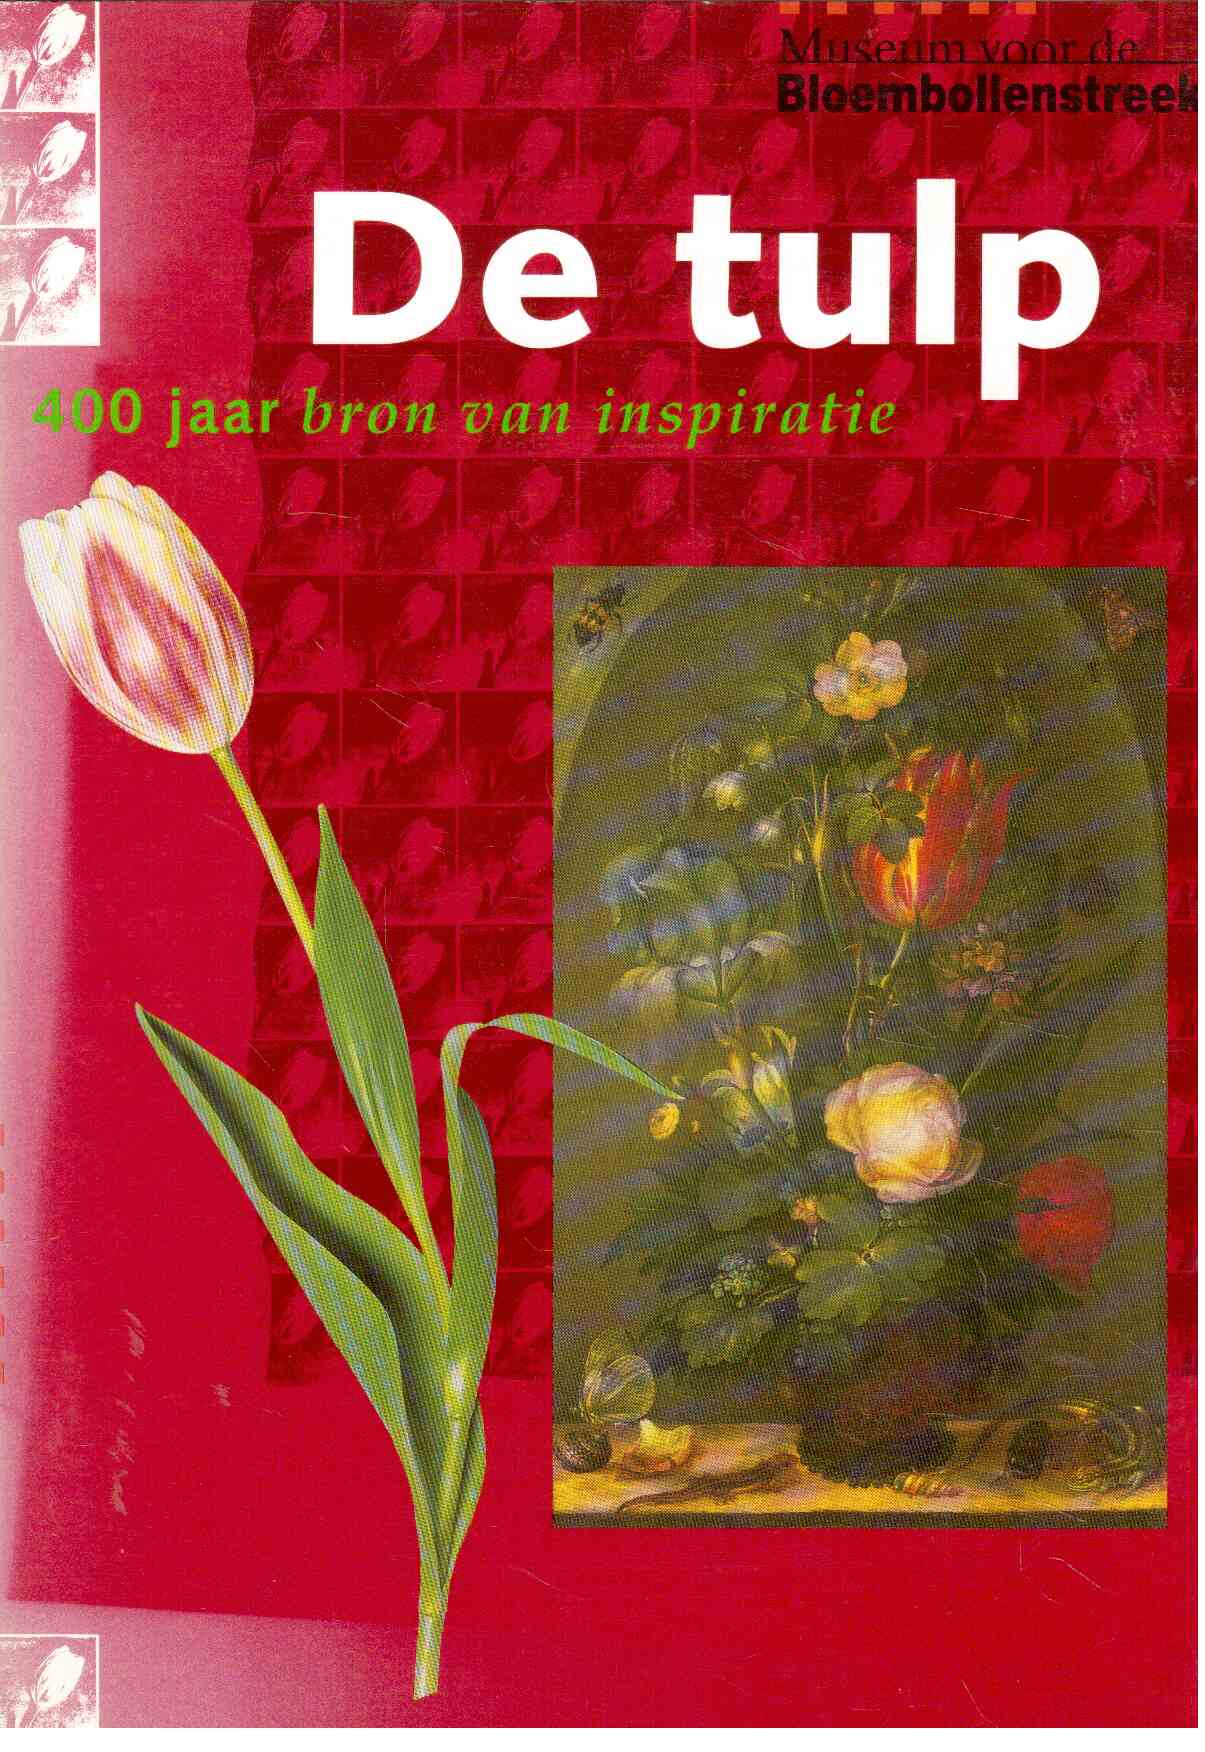 De tulp : 400 jaar bron von inspiratie